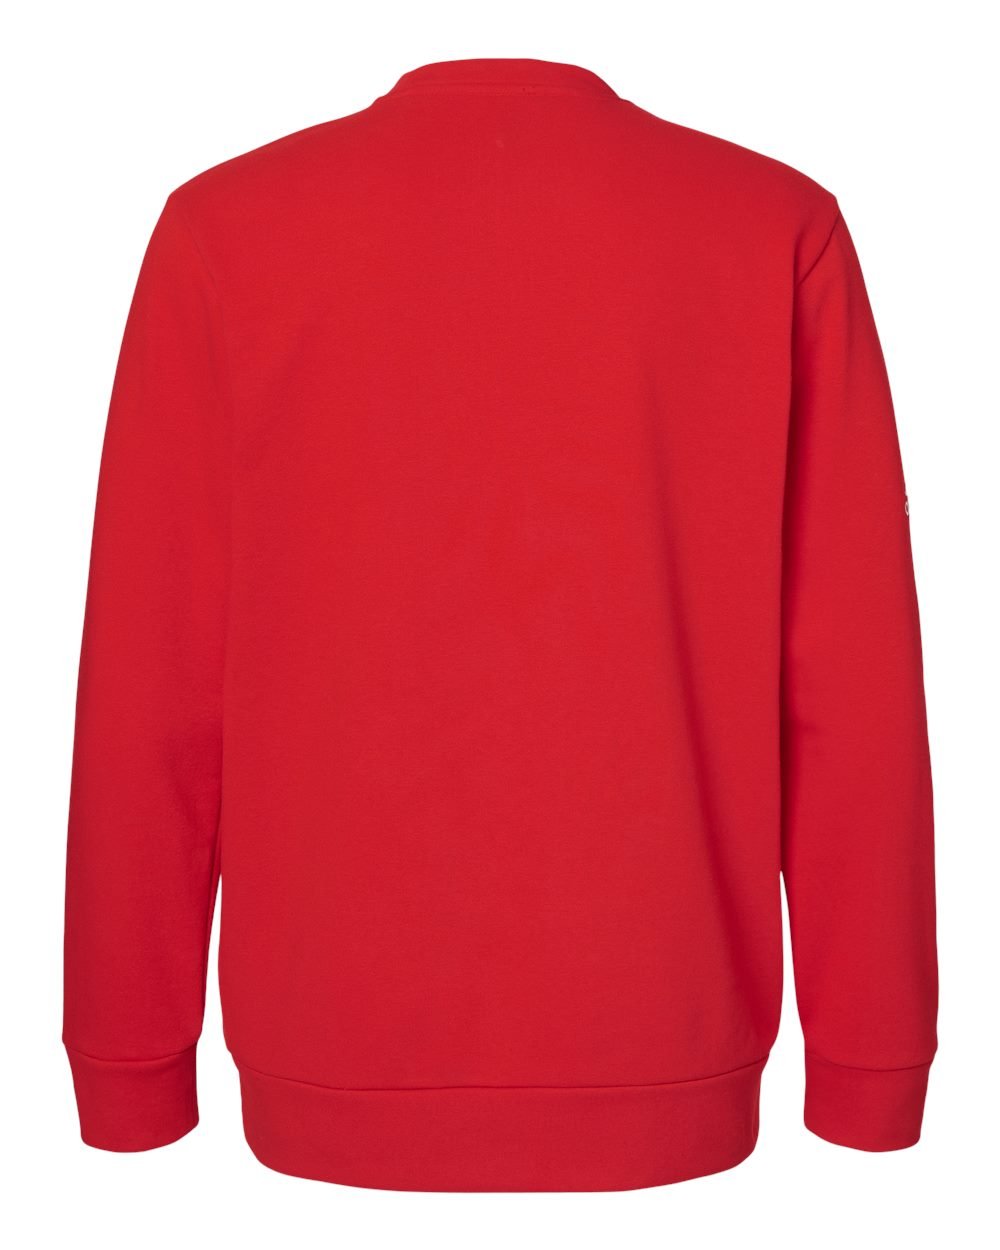 Adidas A434 Fleece Crewneck Sweatshirt #color_Red